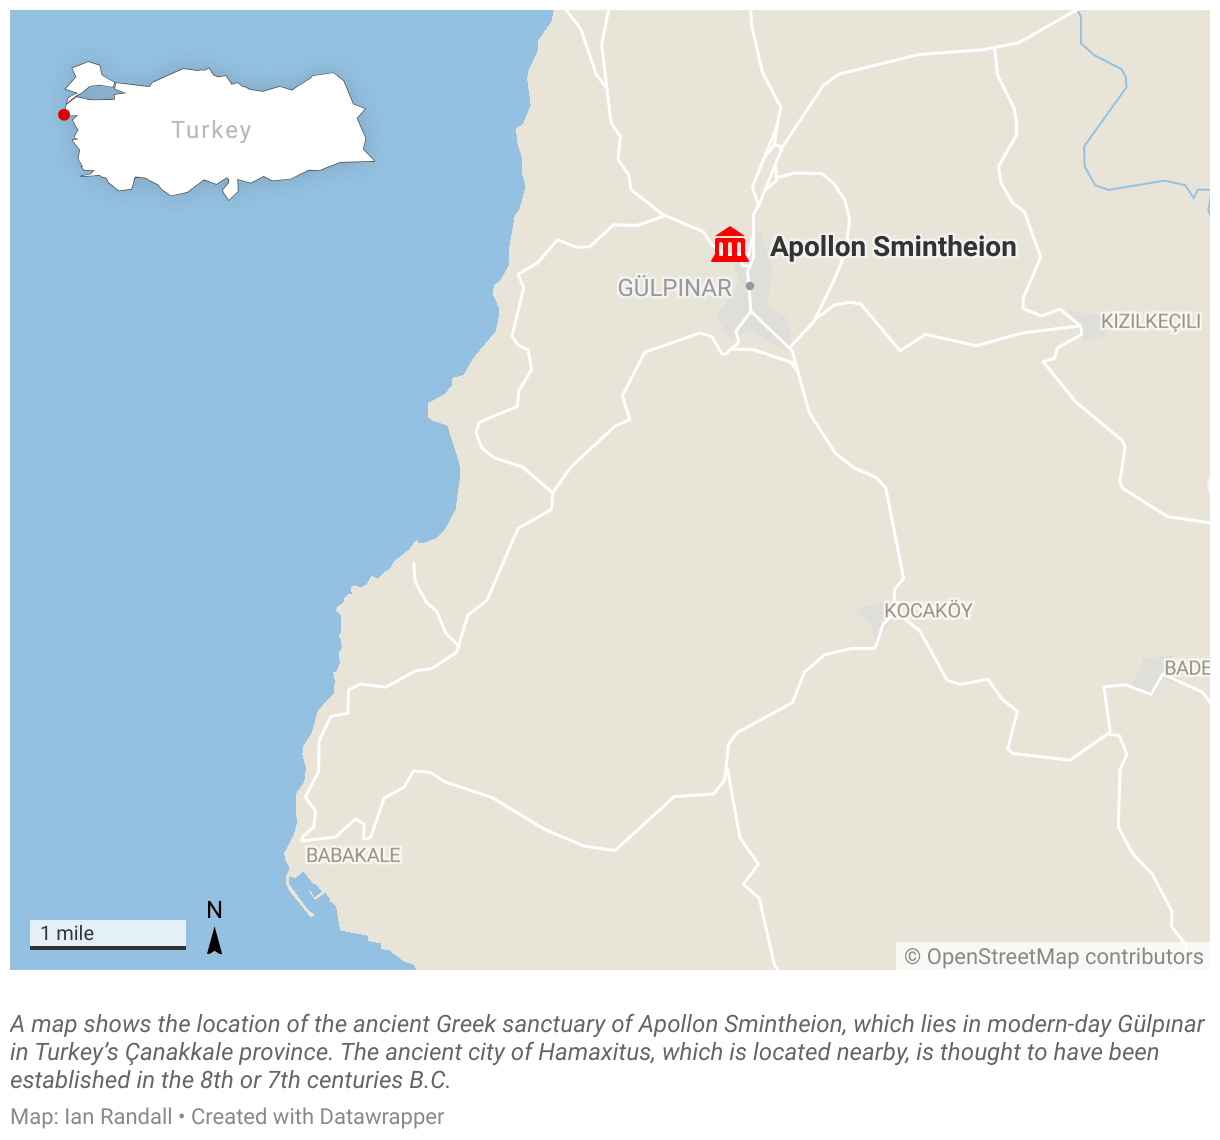 Une carte montre l'emplacement de l'ancien sanctuaire grec d'Apollon Smintheion, qui se trouve aujourd'hui à Gülpınar, dans la province turque de Çanakkale.